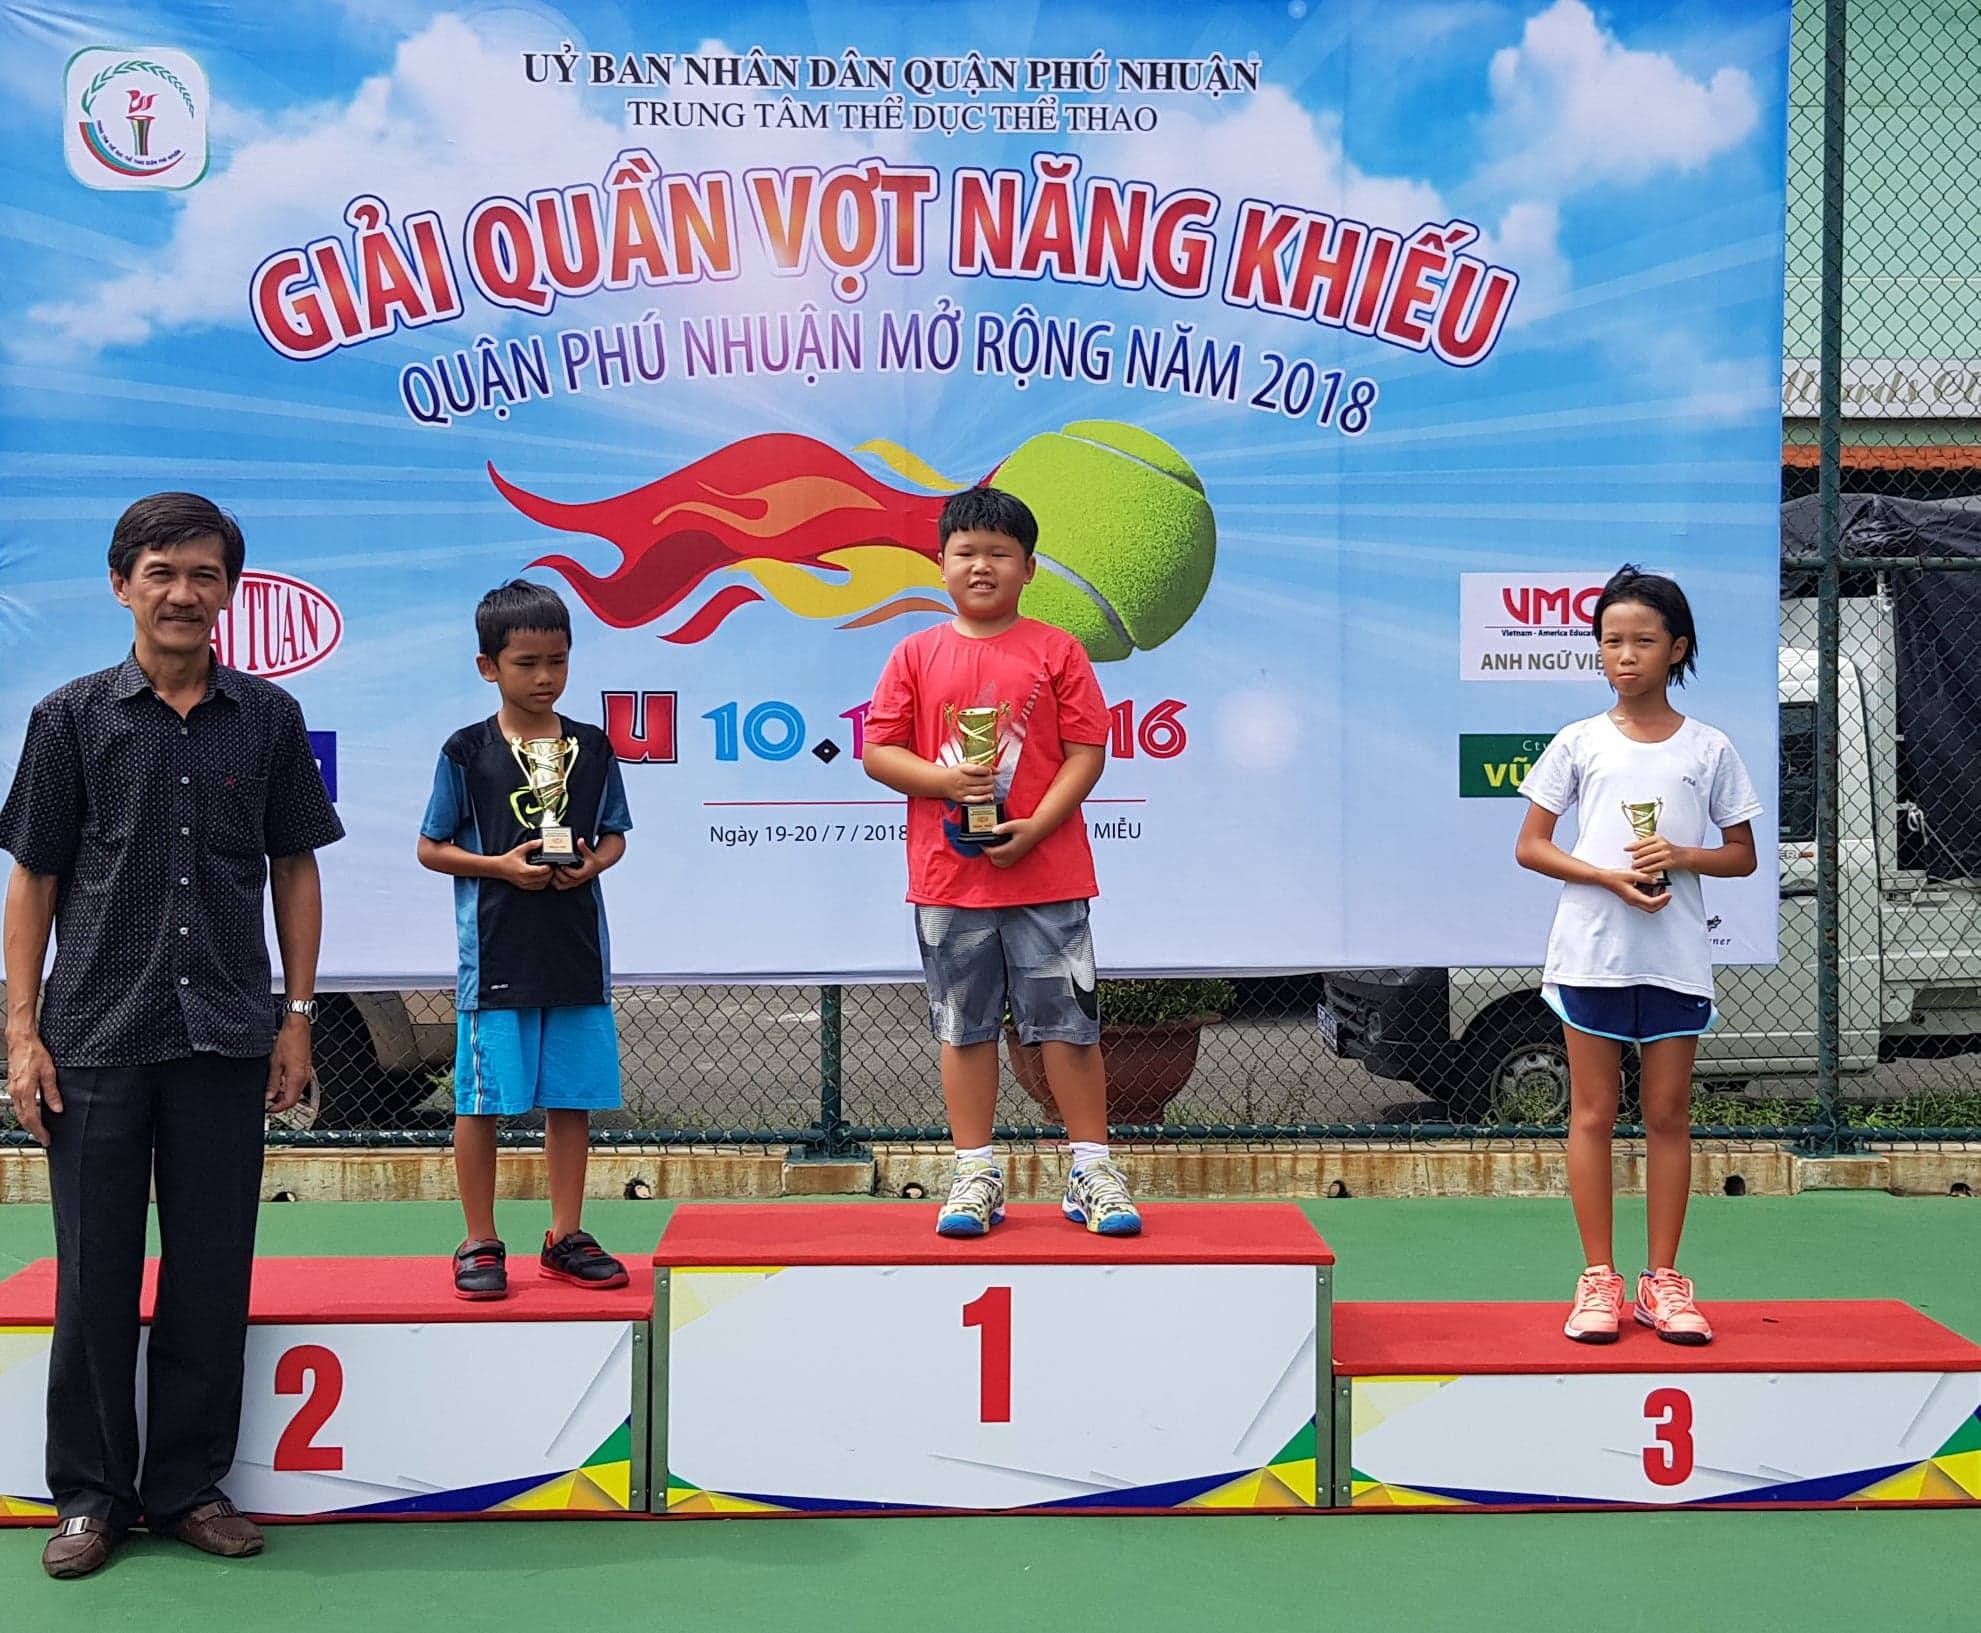 Giải Quần vợt Năng khiếu quận Phú nhuận mở rộng năm 2018